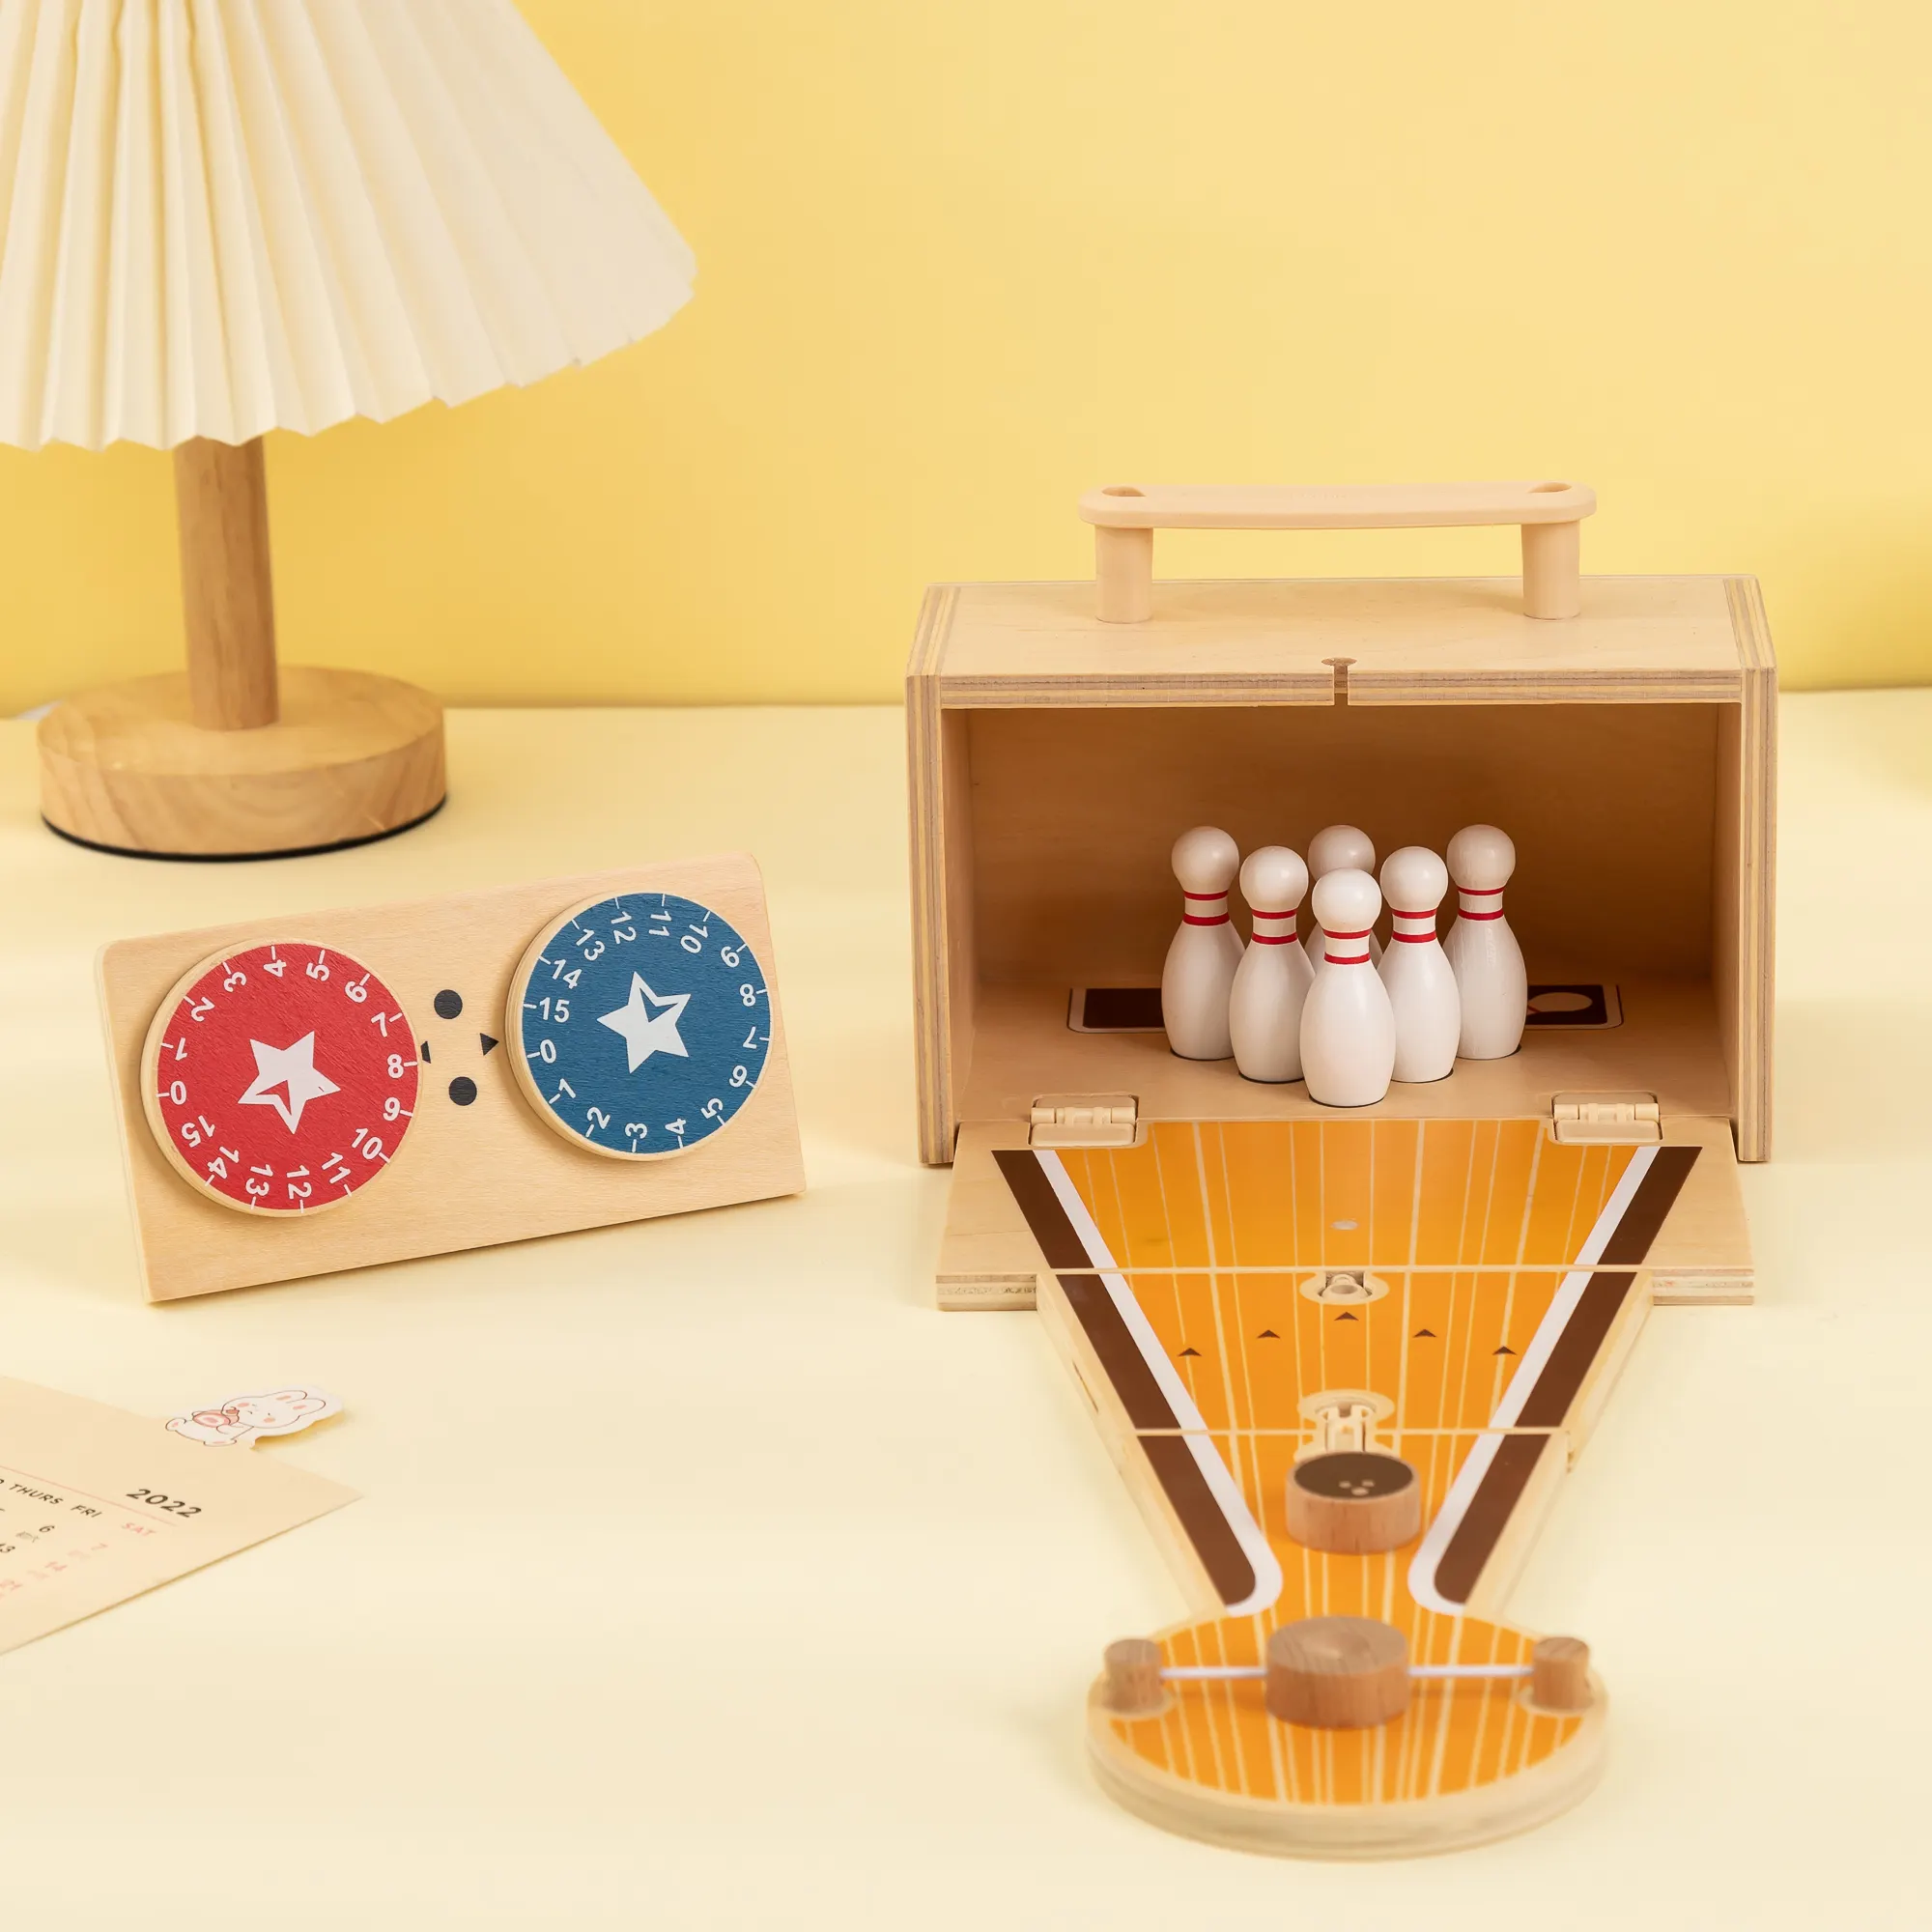 UDEAS לילדים צעצועי משחק שולחן מקורה שולחן מיני משחקי באולינג מעץ לילד